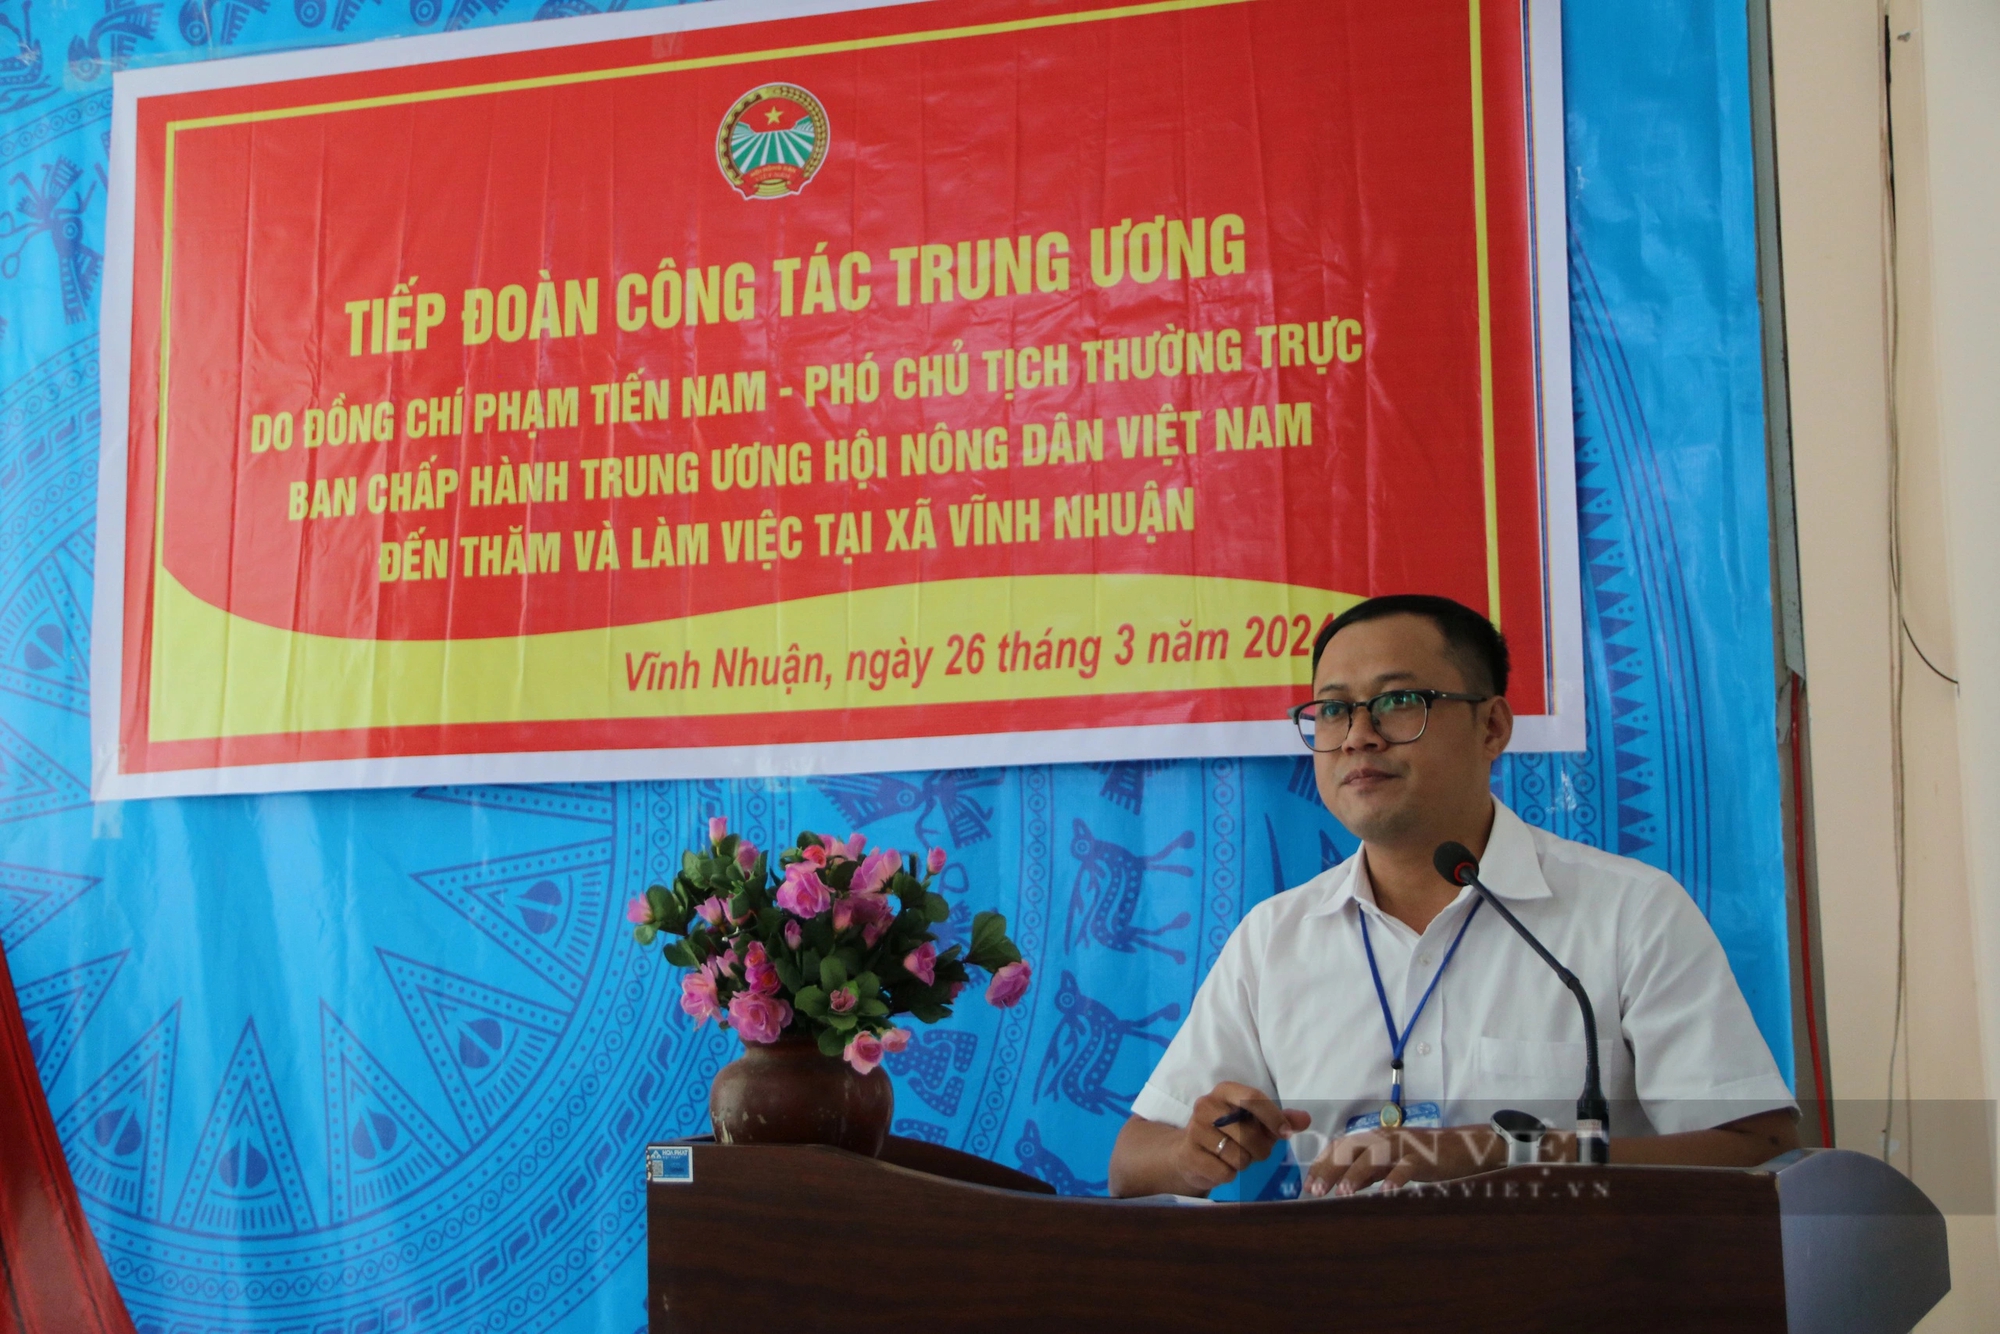 Phó Chủ tịch T.Ư Hội Nông dân Việt Nam Phạm Tiến Nam kiểm tra hoạt động Quỹ Hỗ trợ nông dân tại An Giang- Ảnh 3.